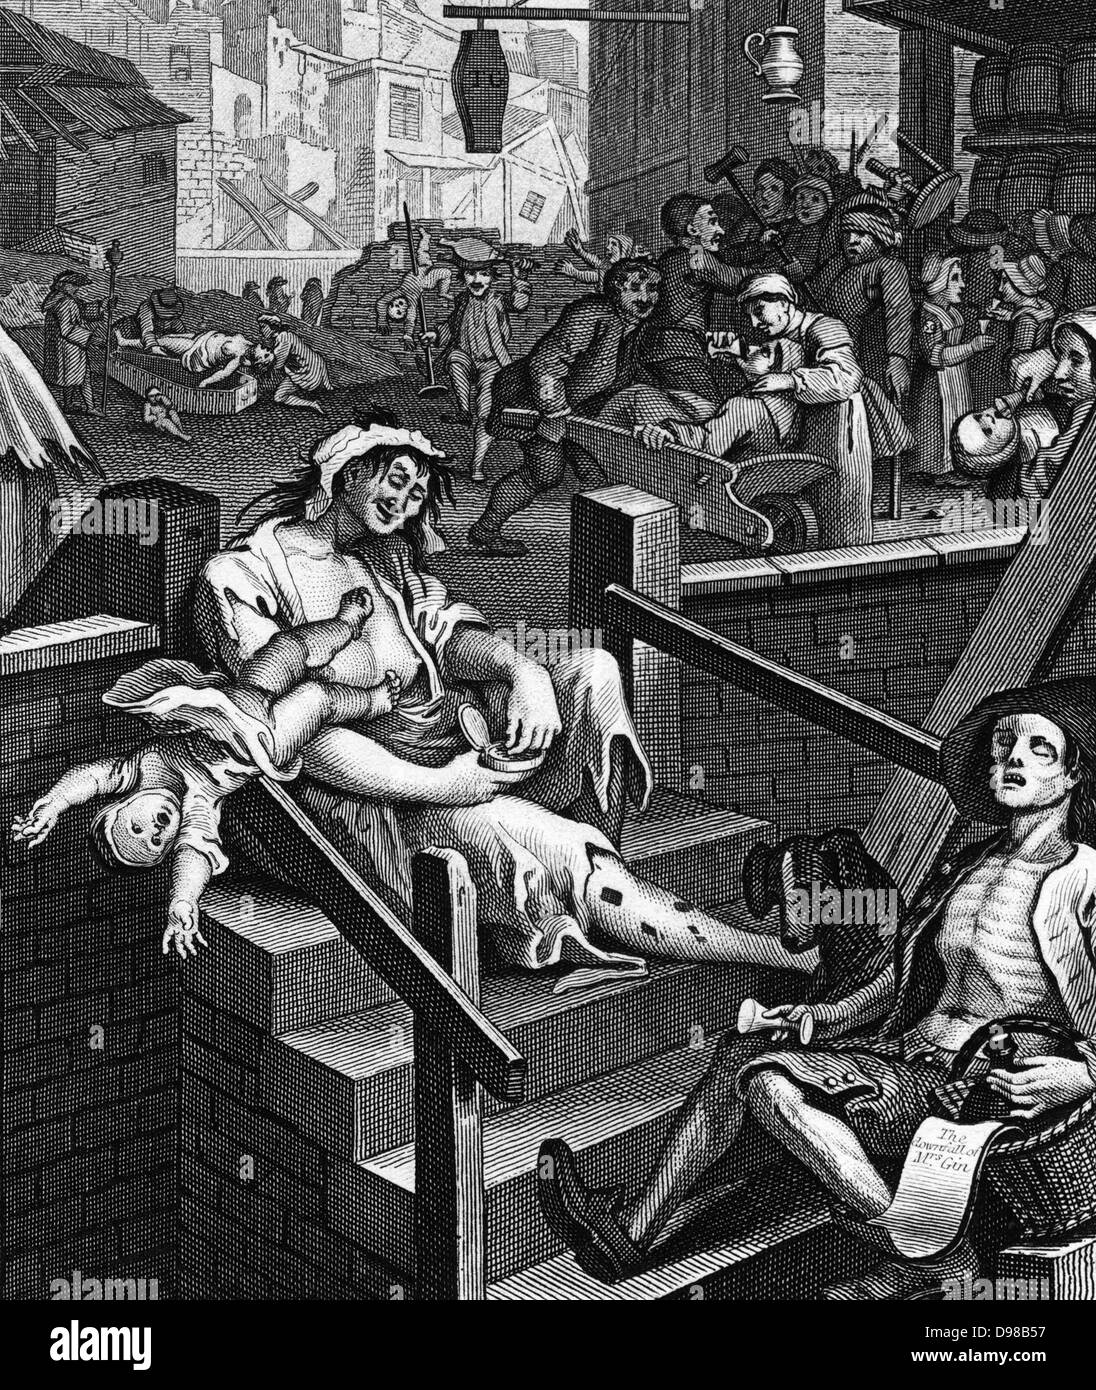 Gin Lane est un imprimer publié en 1751 par William Hogarth (1697 - 1764) un peintre, graveur, à l'appui de ce qui allait devenir la Loi sur Gin. Il décrit les méfaits de la consommation de gin Banque D'Images